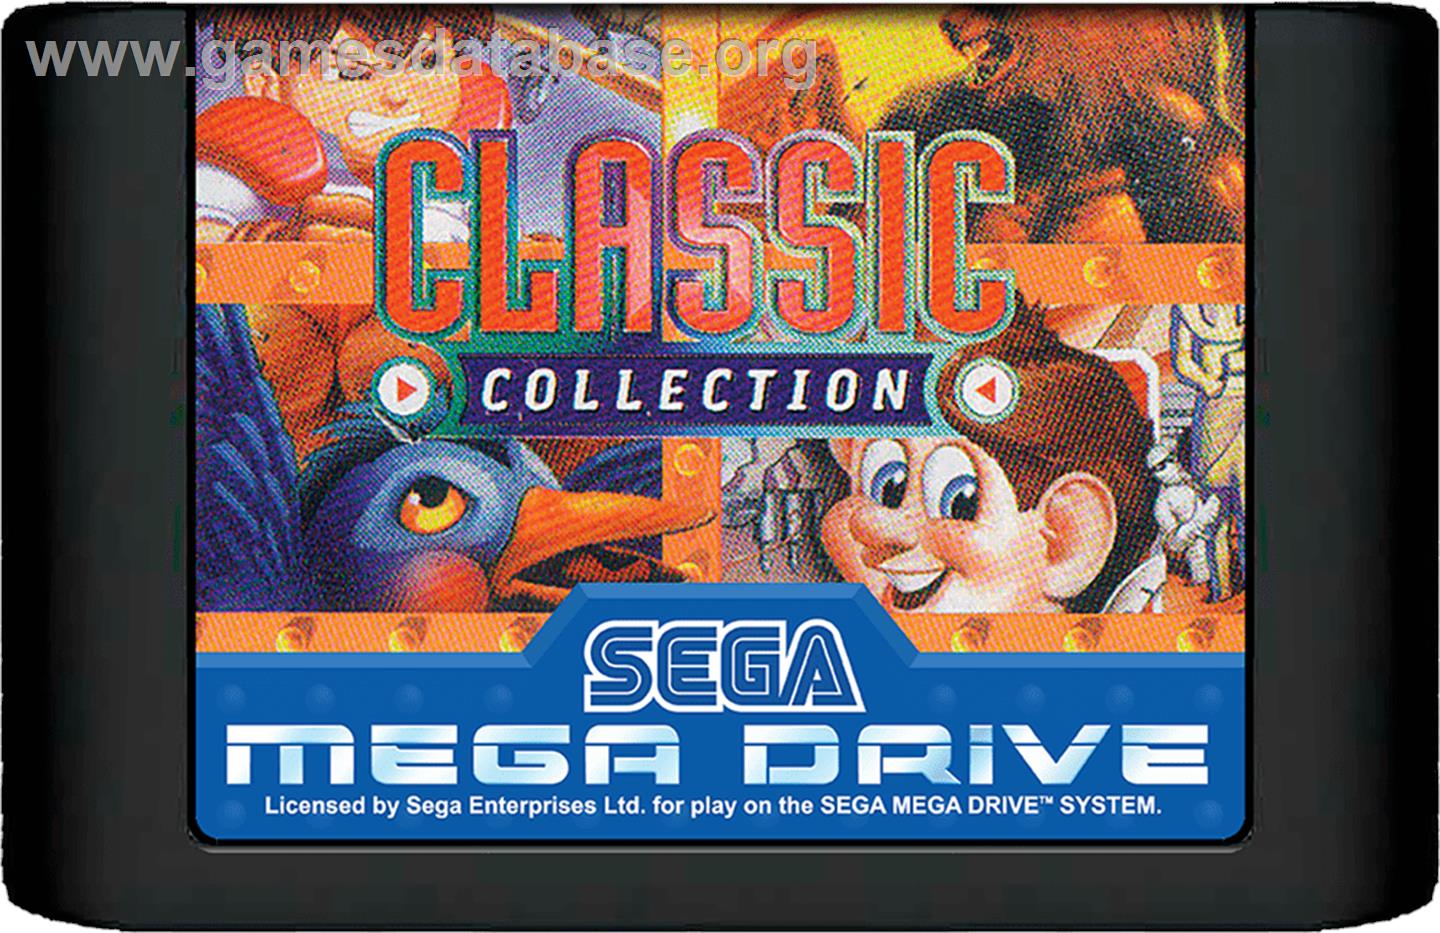 Classic Collection - Sega Genesis - Artwork - Cartridge